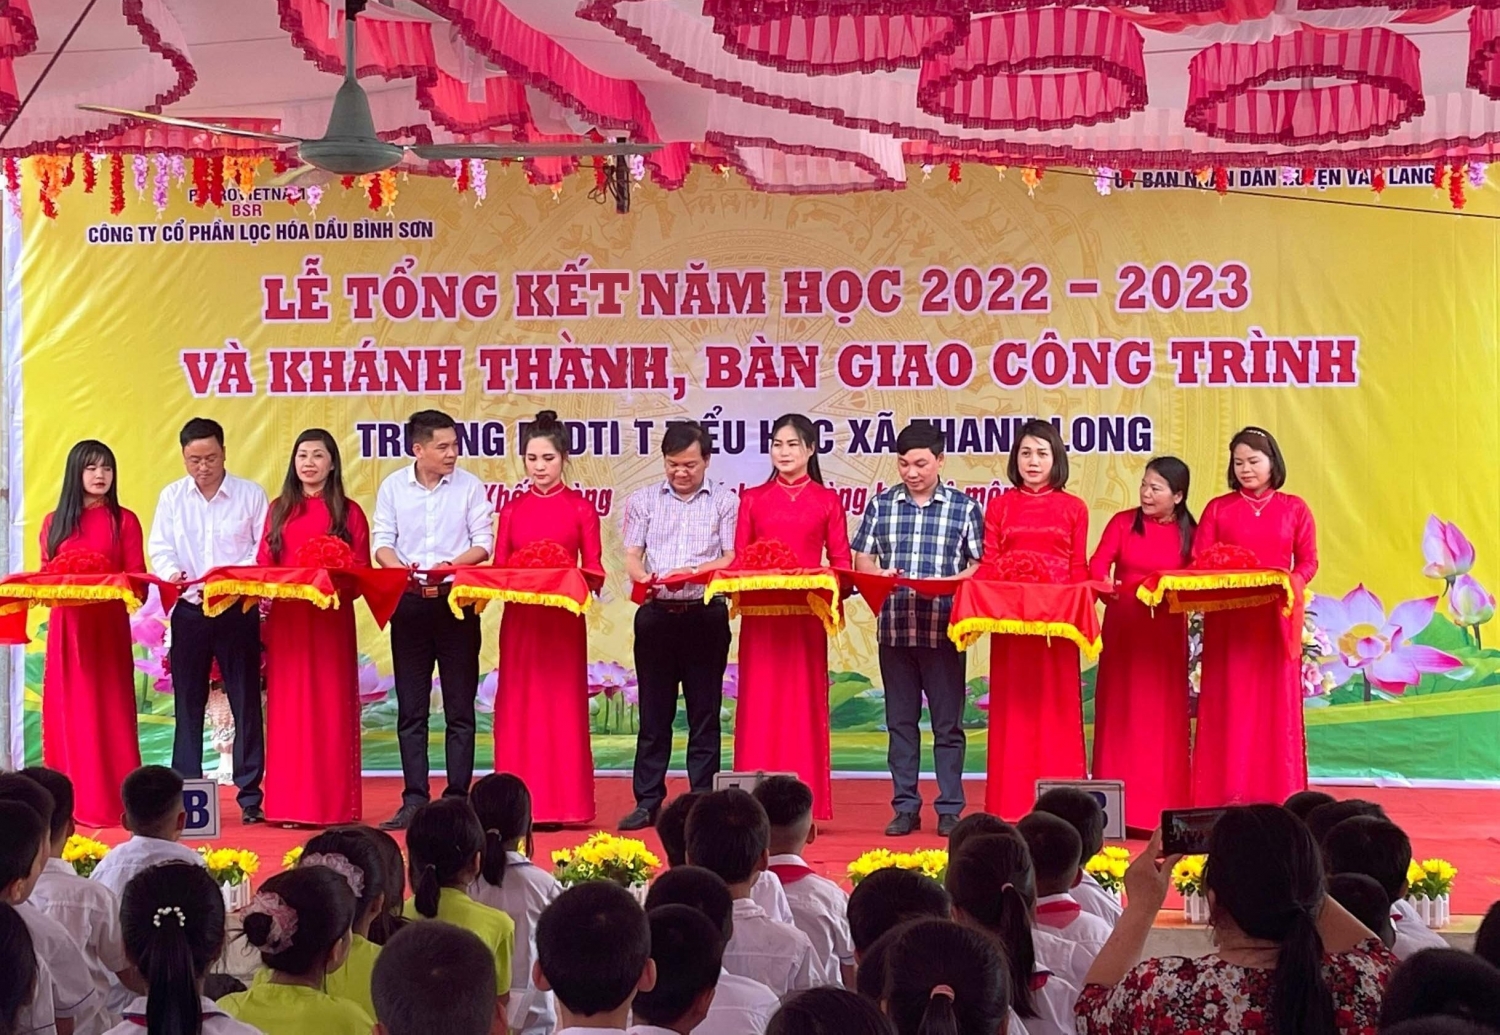 BSR tài trợ 5 tỷ đồng xây Trường Tiểu học xã Thanh Long (Lạng Sơn)